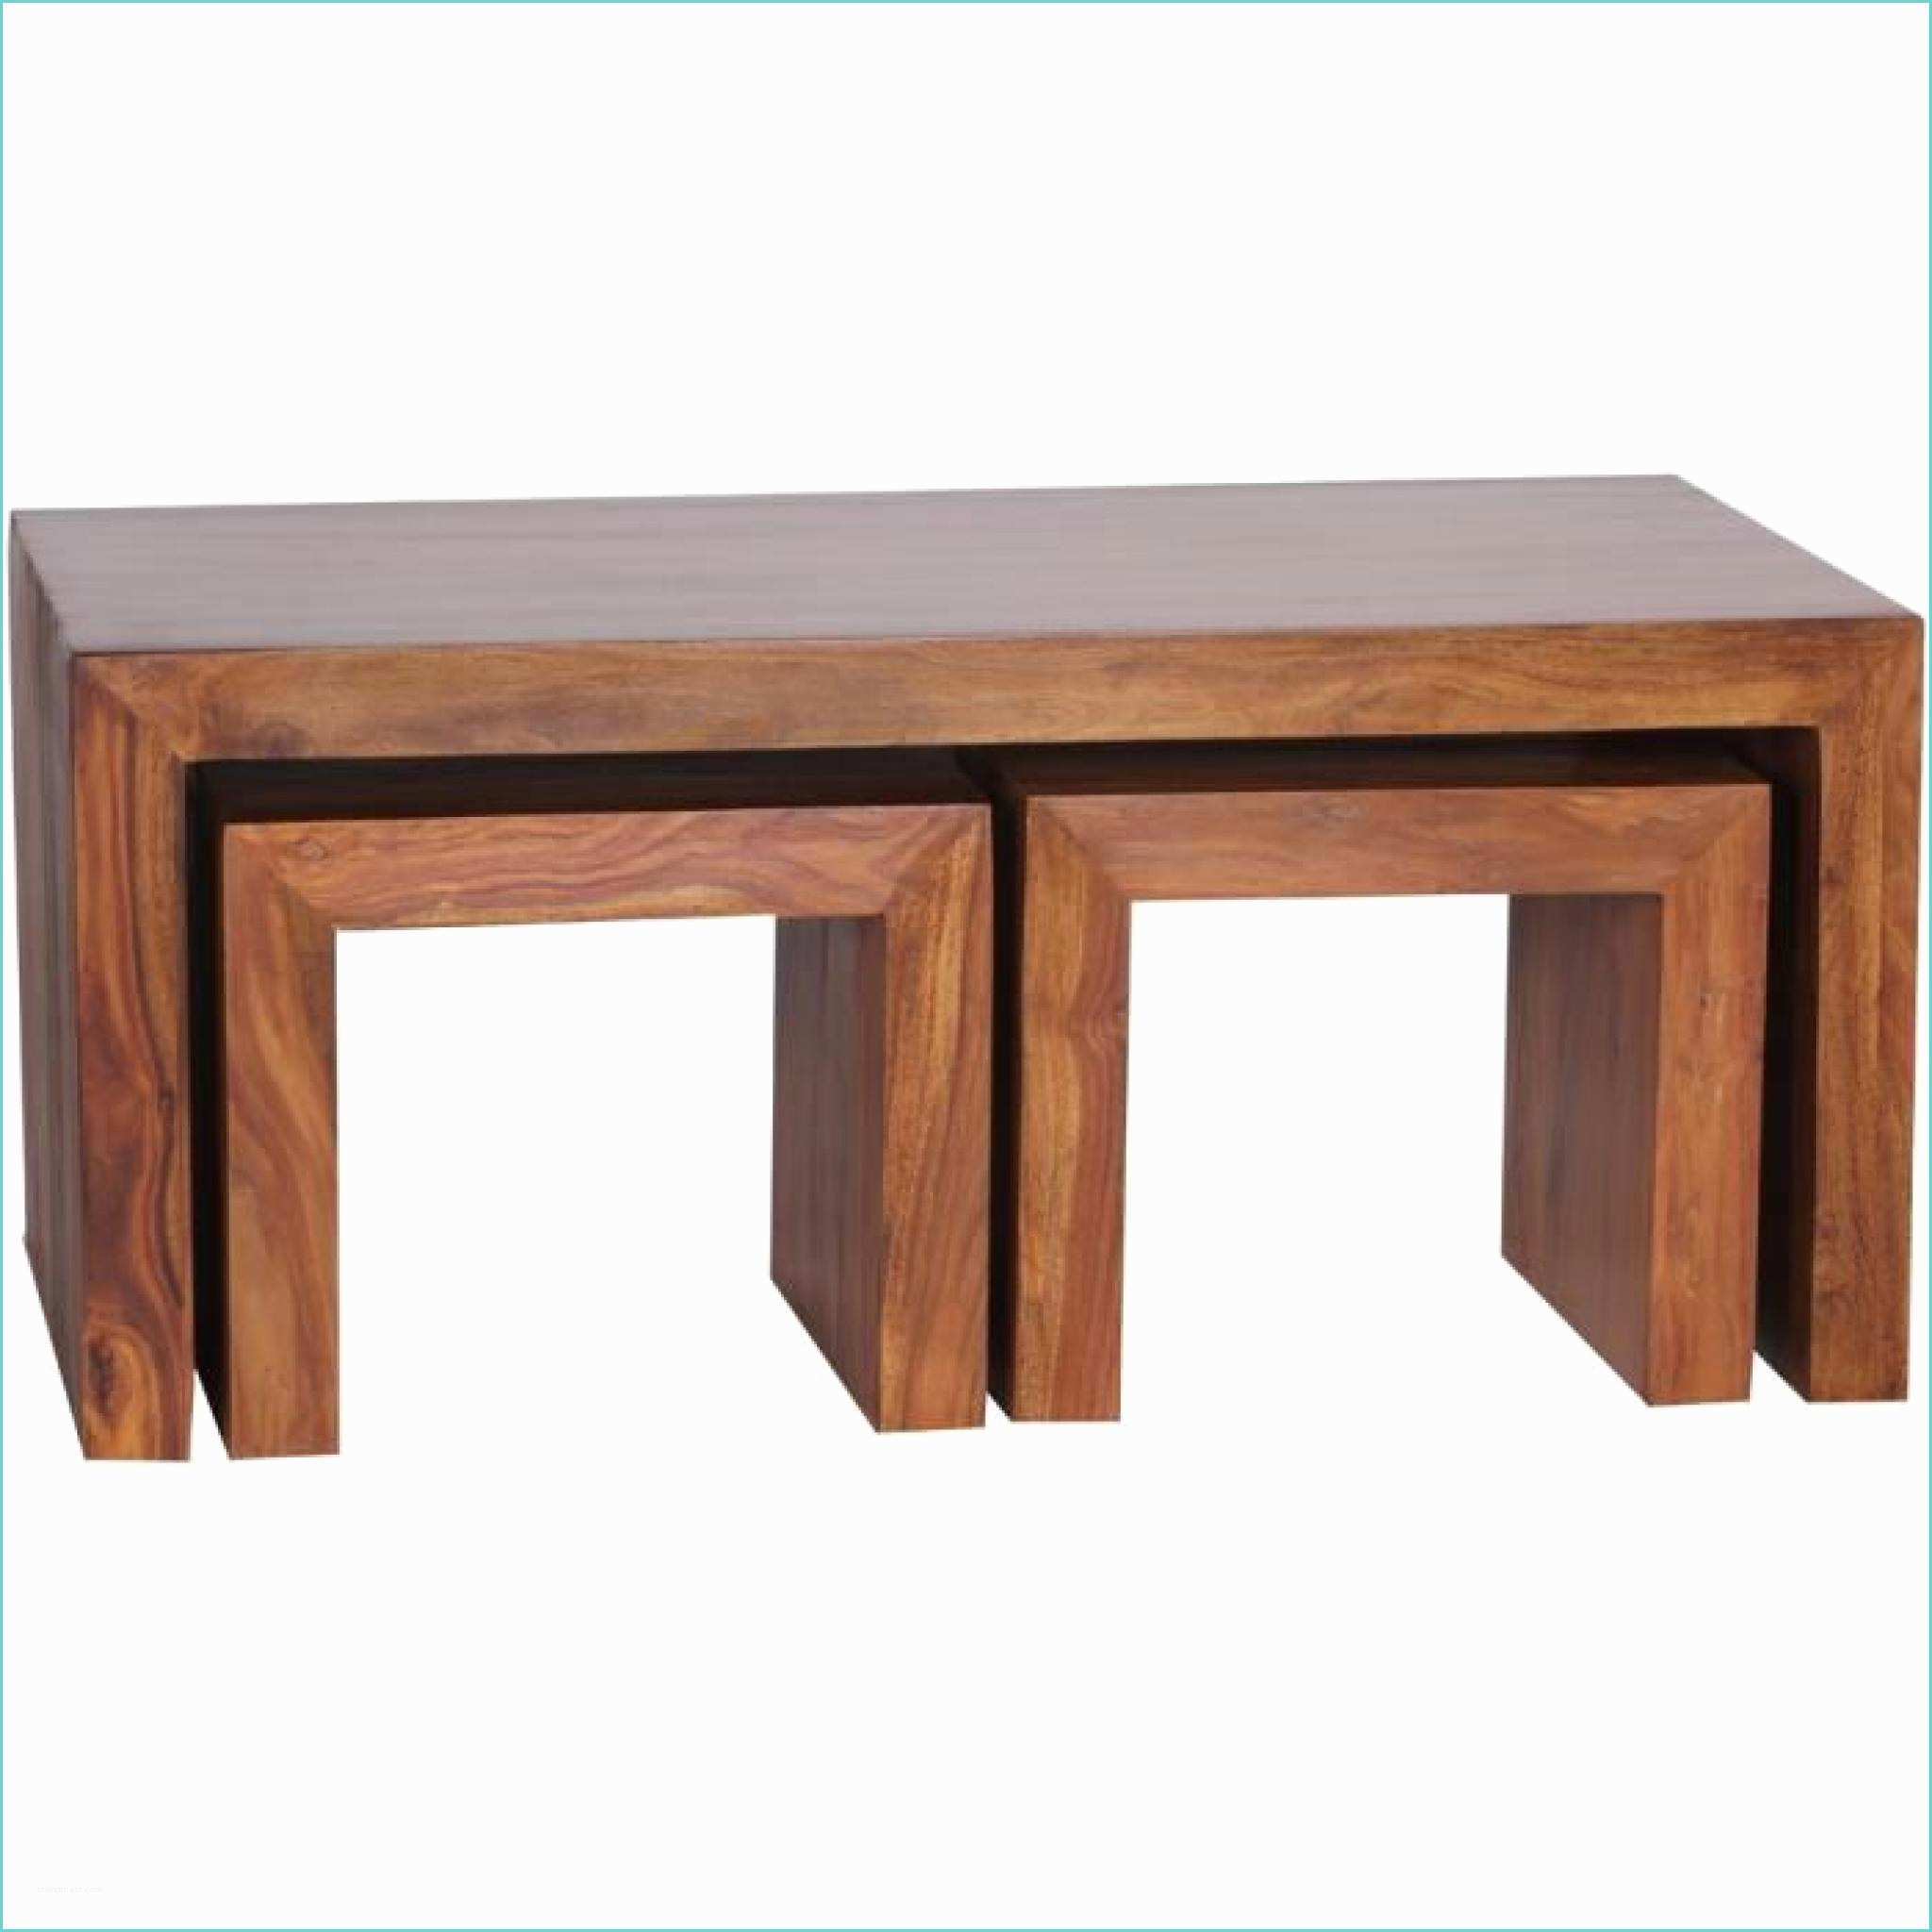 Table Basse Design Bois Table Basse Bois Massif Design – Obasinc